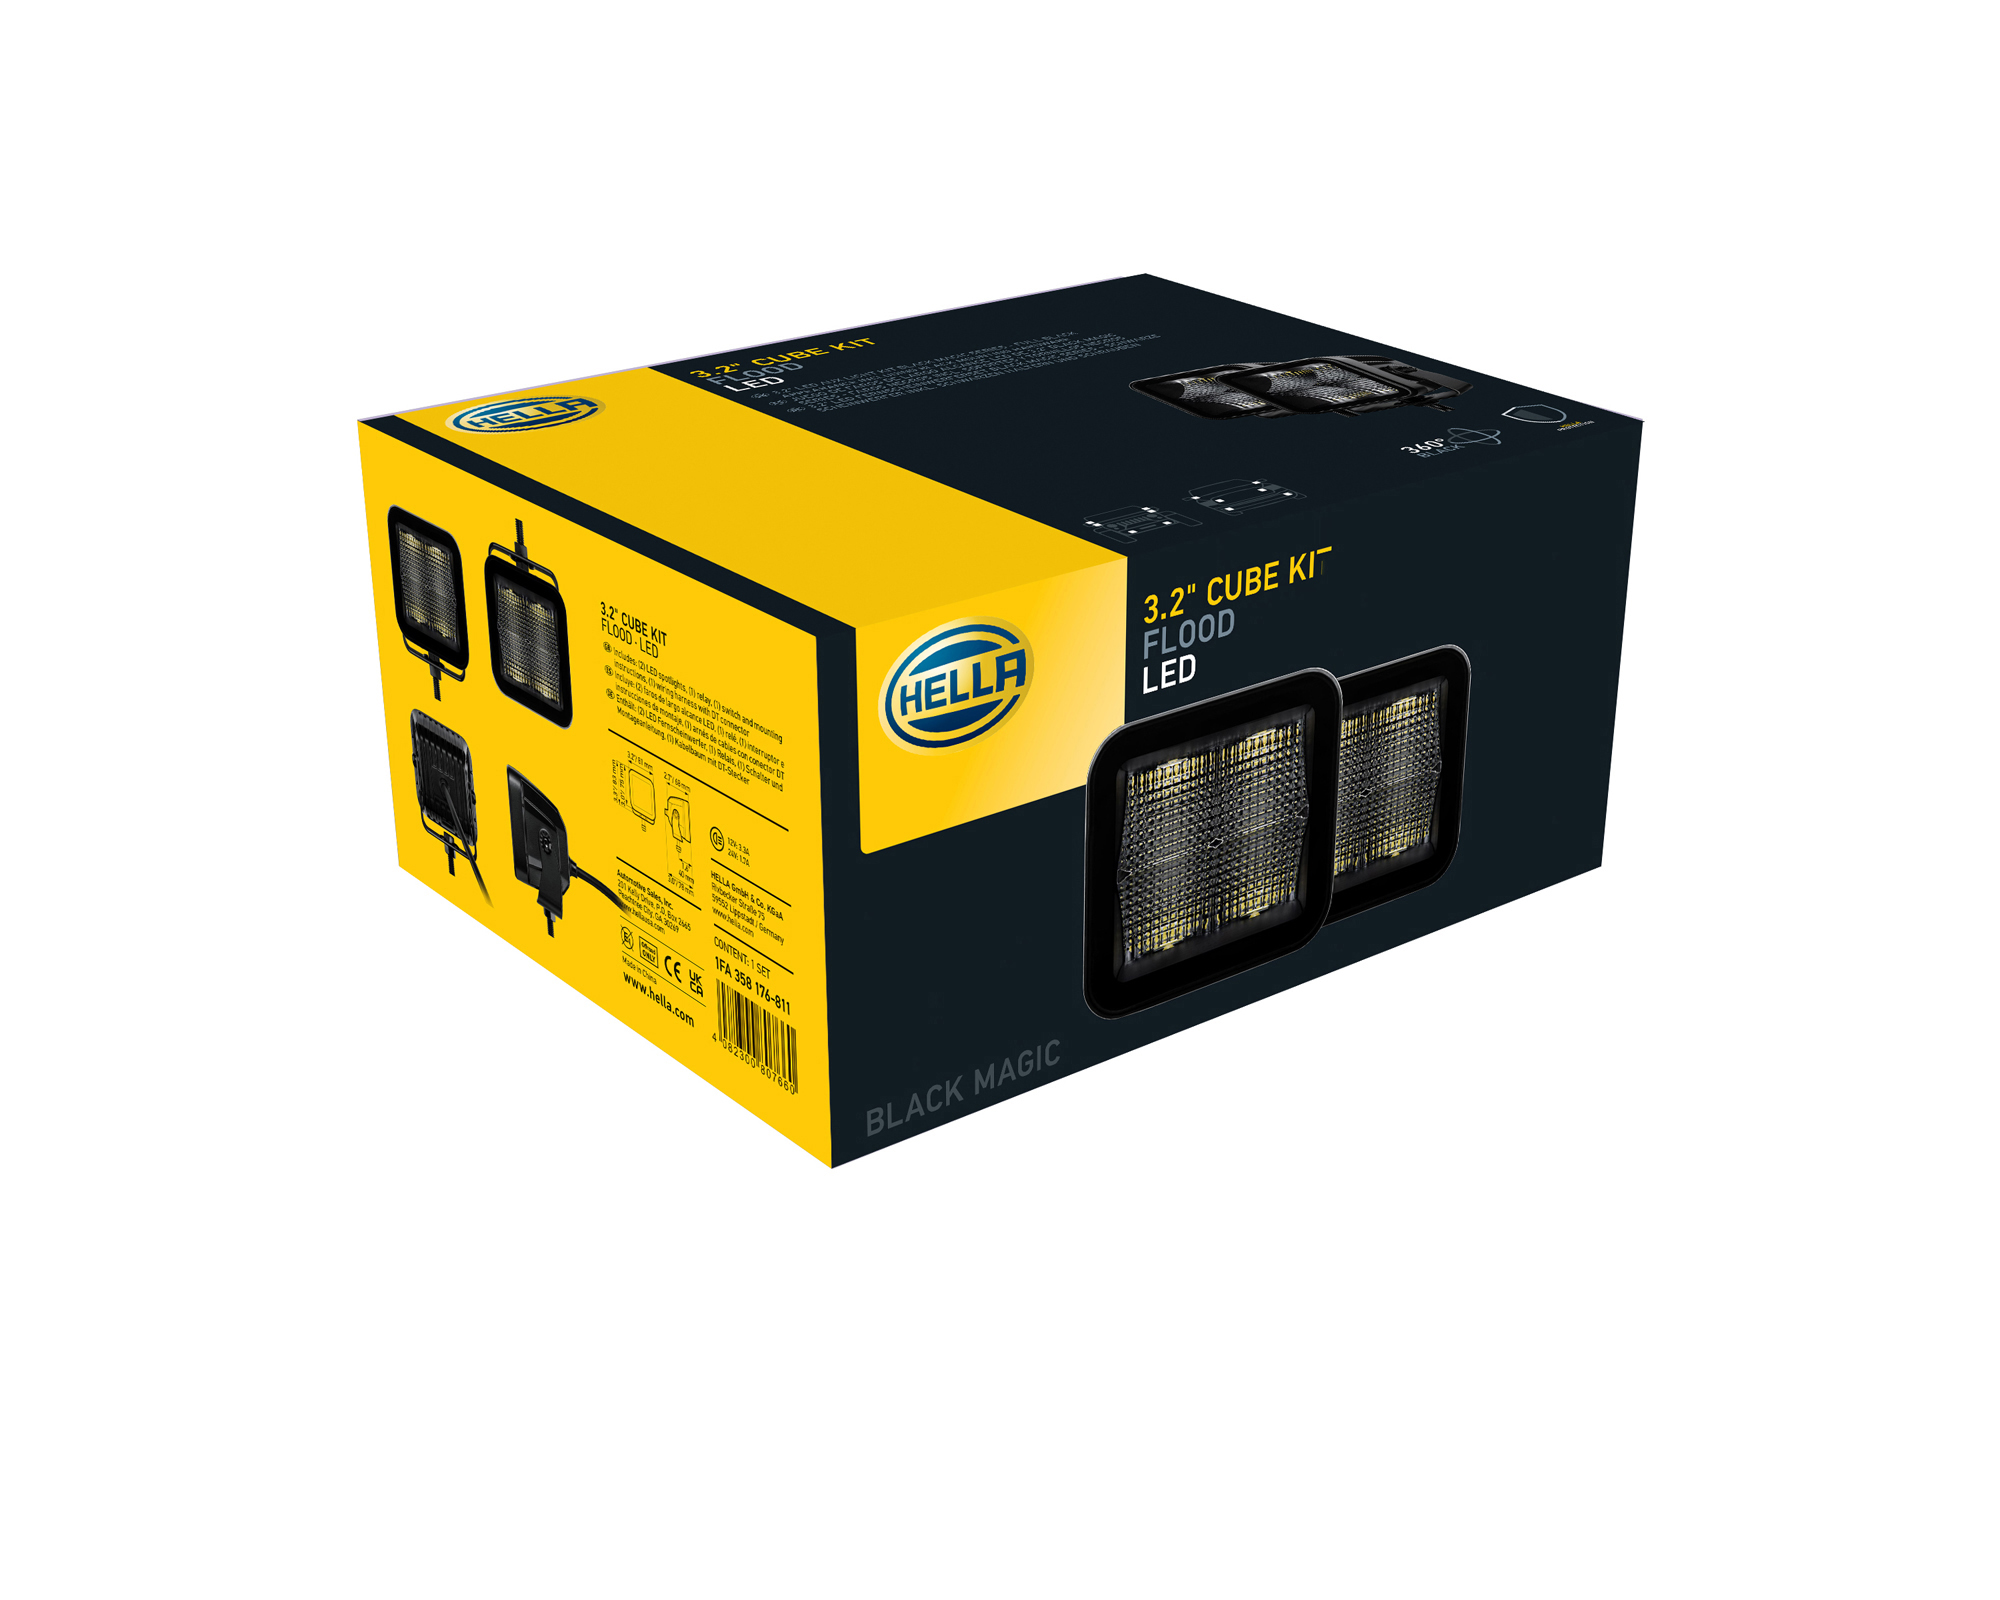 Black Magic LED Cube Kit 3.2 Off-road